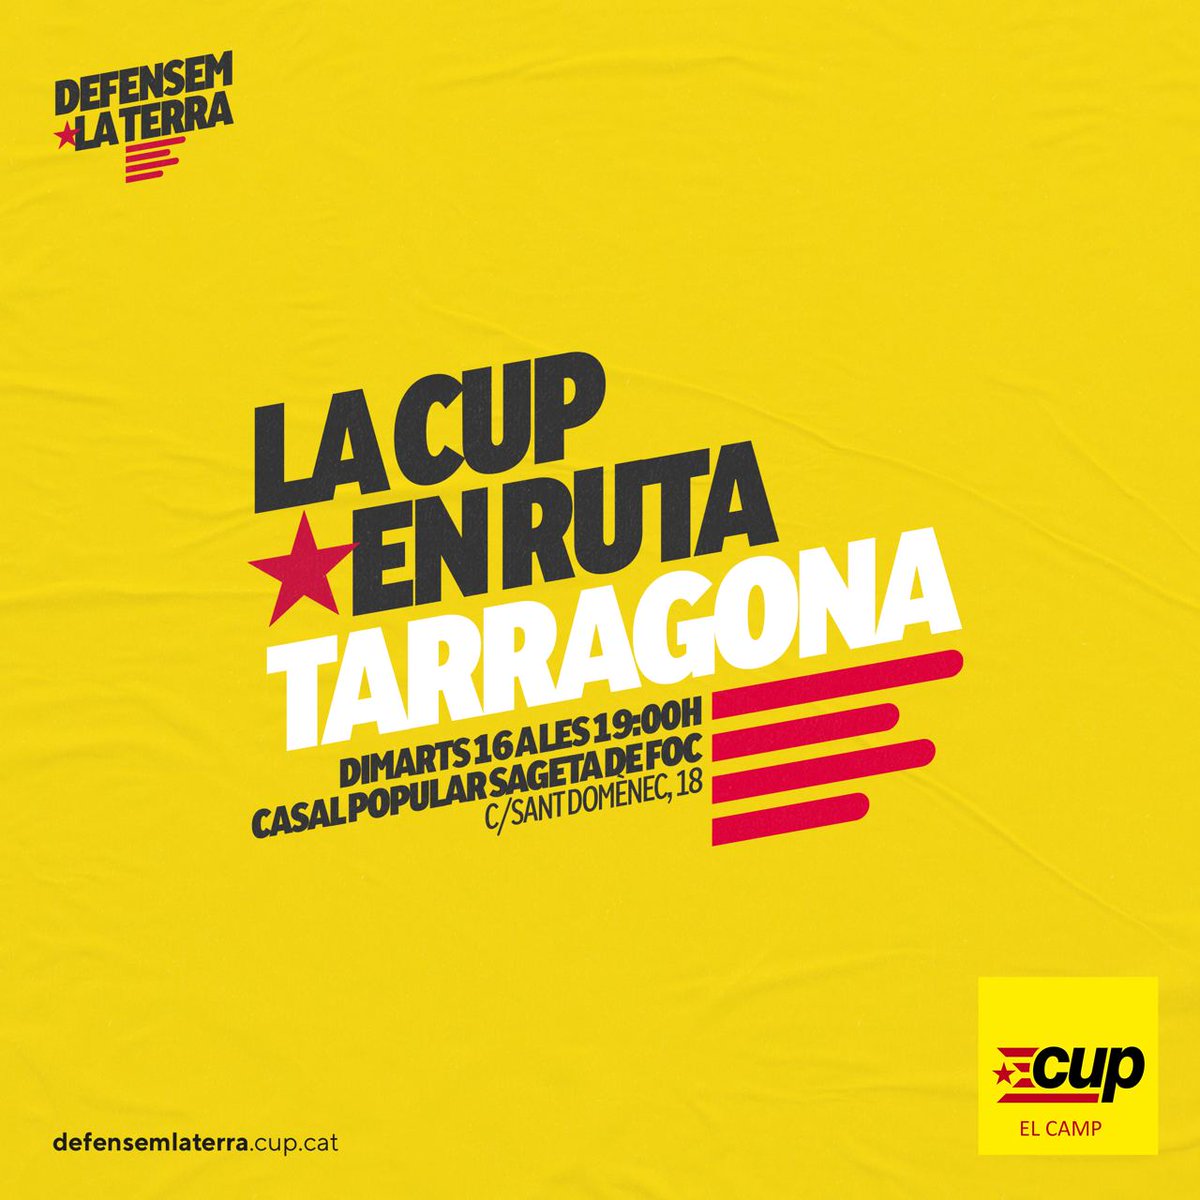 El proper dimarts, la CUP en ruta arriba a Tarragona, on se celebrarà una assemblea oberta amb les candidates al #12Maig 📅 Dimarts 16 d'abril ⏰ 19h 📍Casal @la_Sageta de Foc Us hi esperem #DefensemLaTerra!